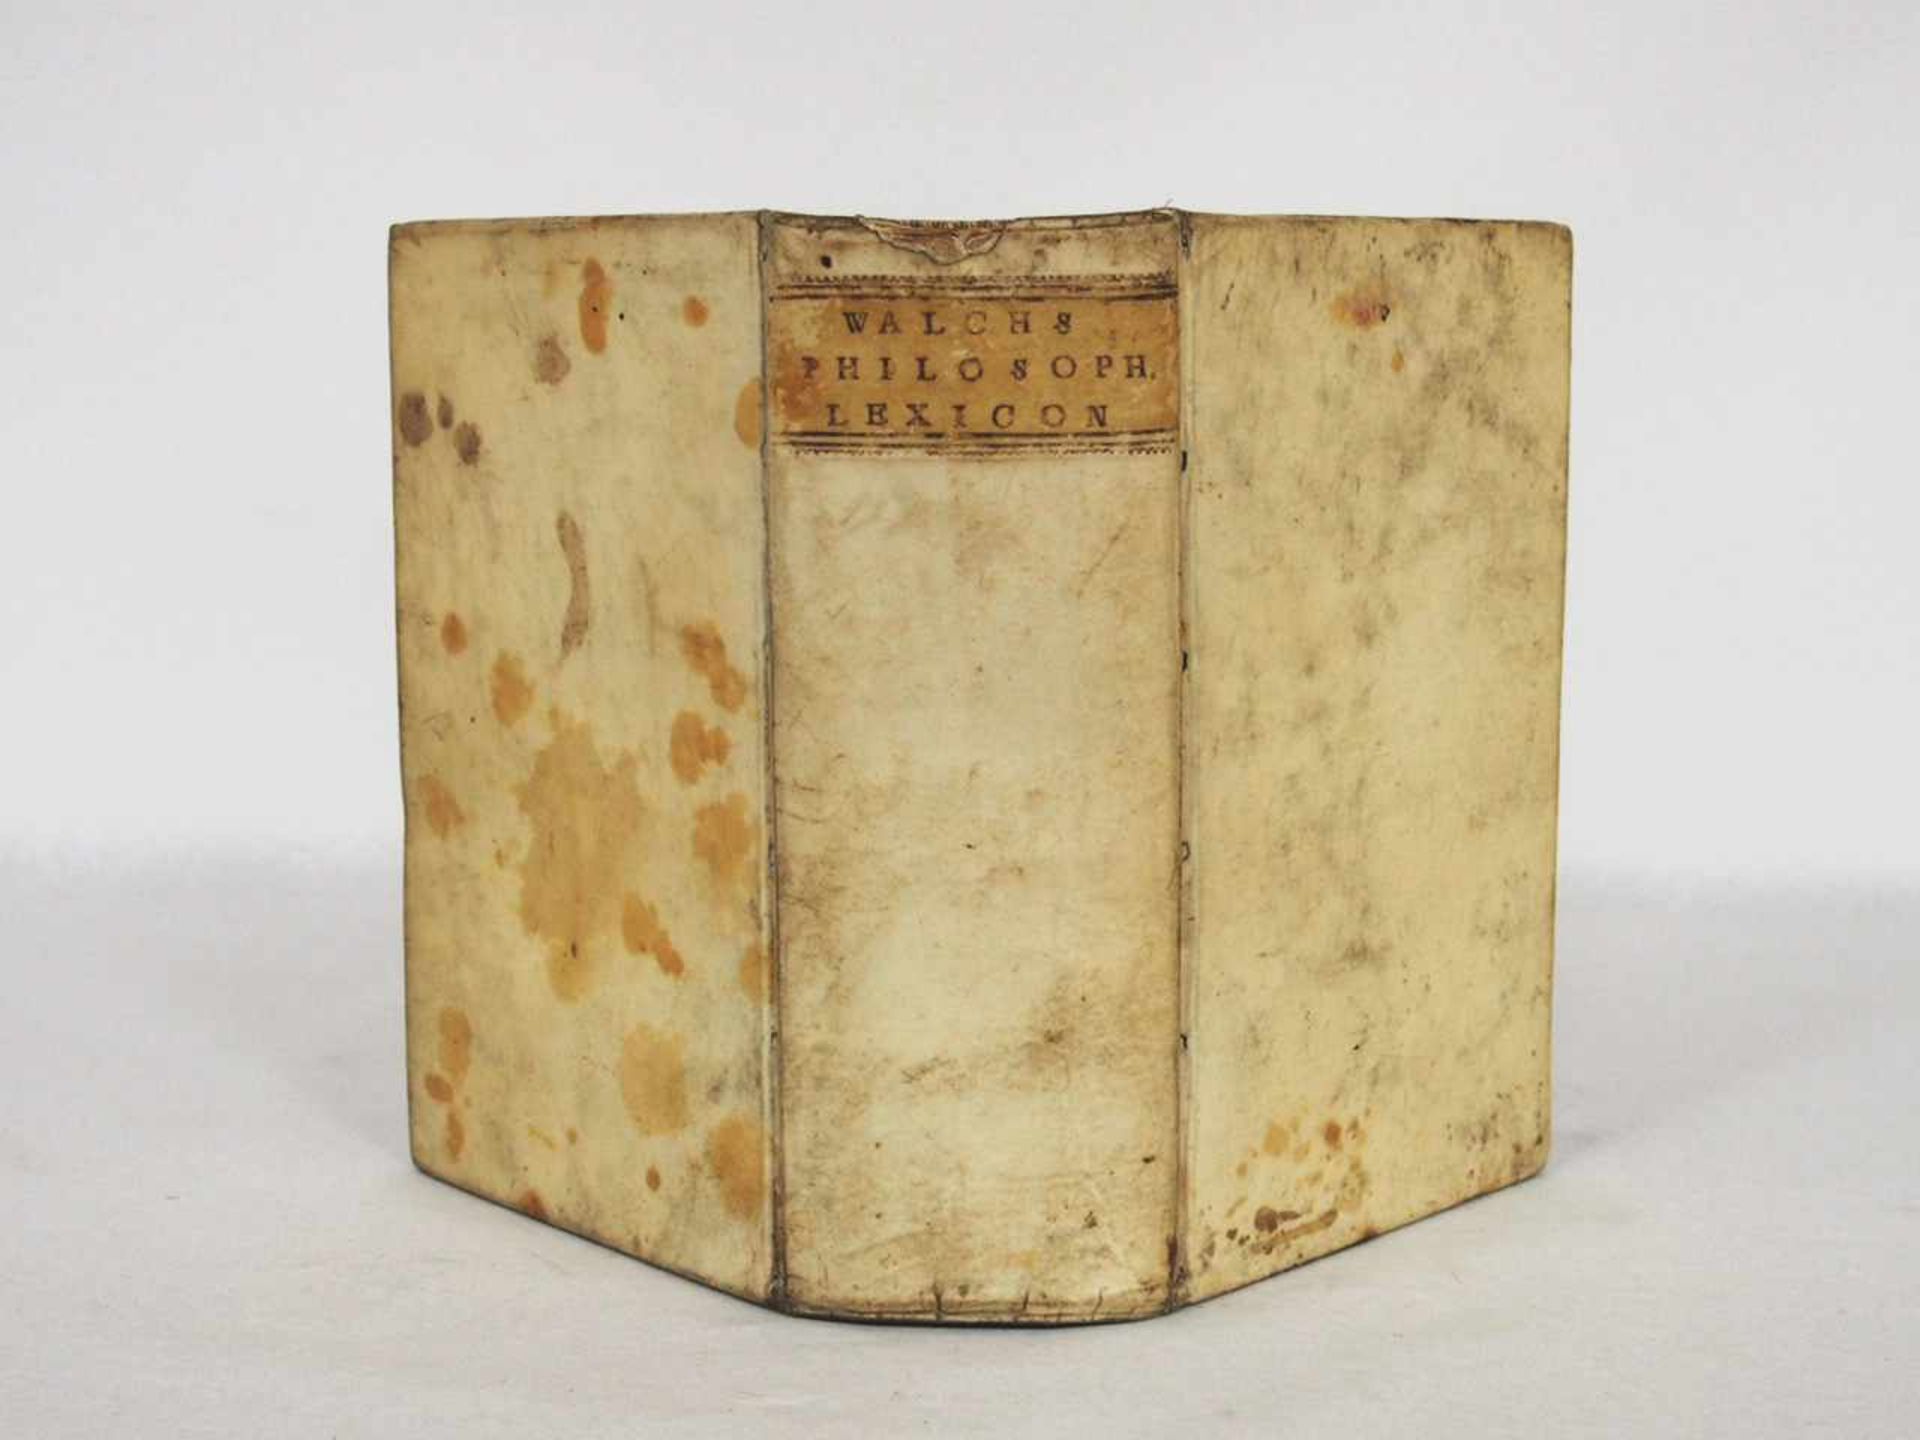 WALCH, Johann GeorgPhilosophisches Lexicon....Leipzig 1740 (Pergamenteinband der Zeit)- - -25.00 % - Image 2 of 2